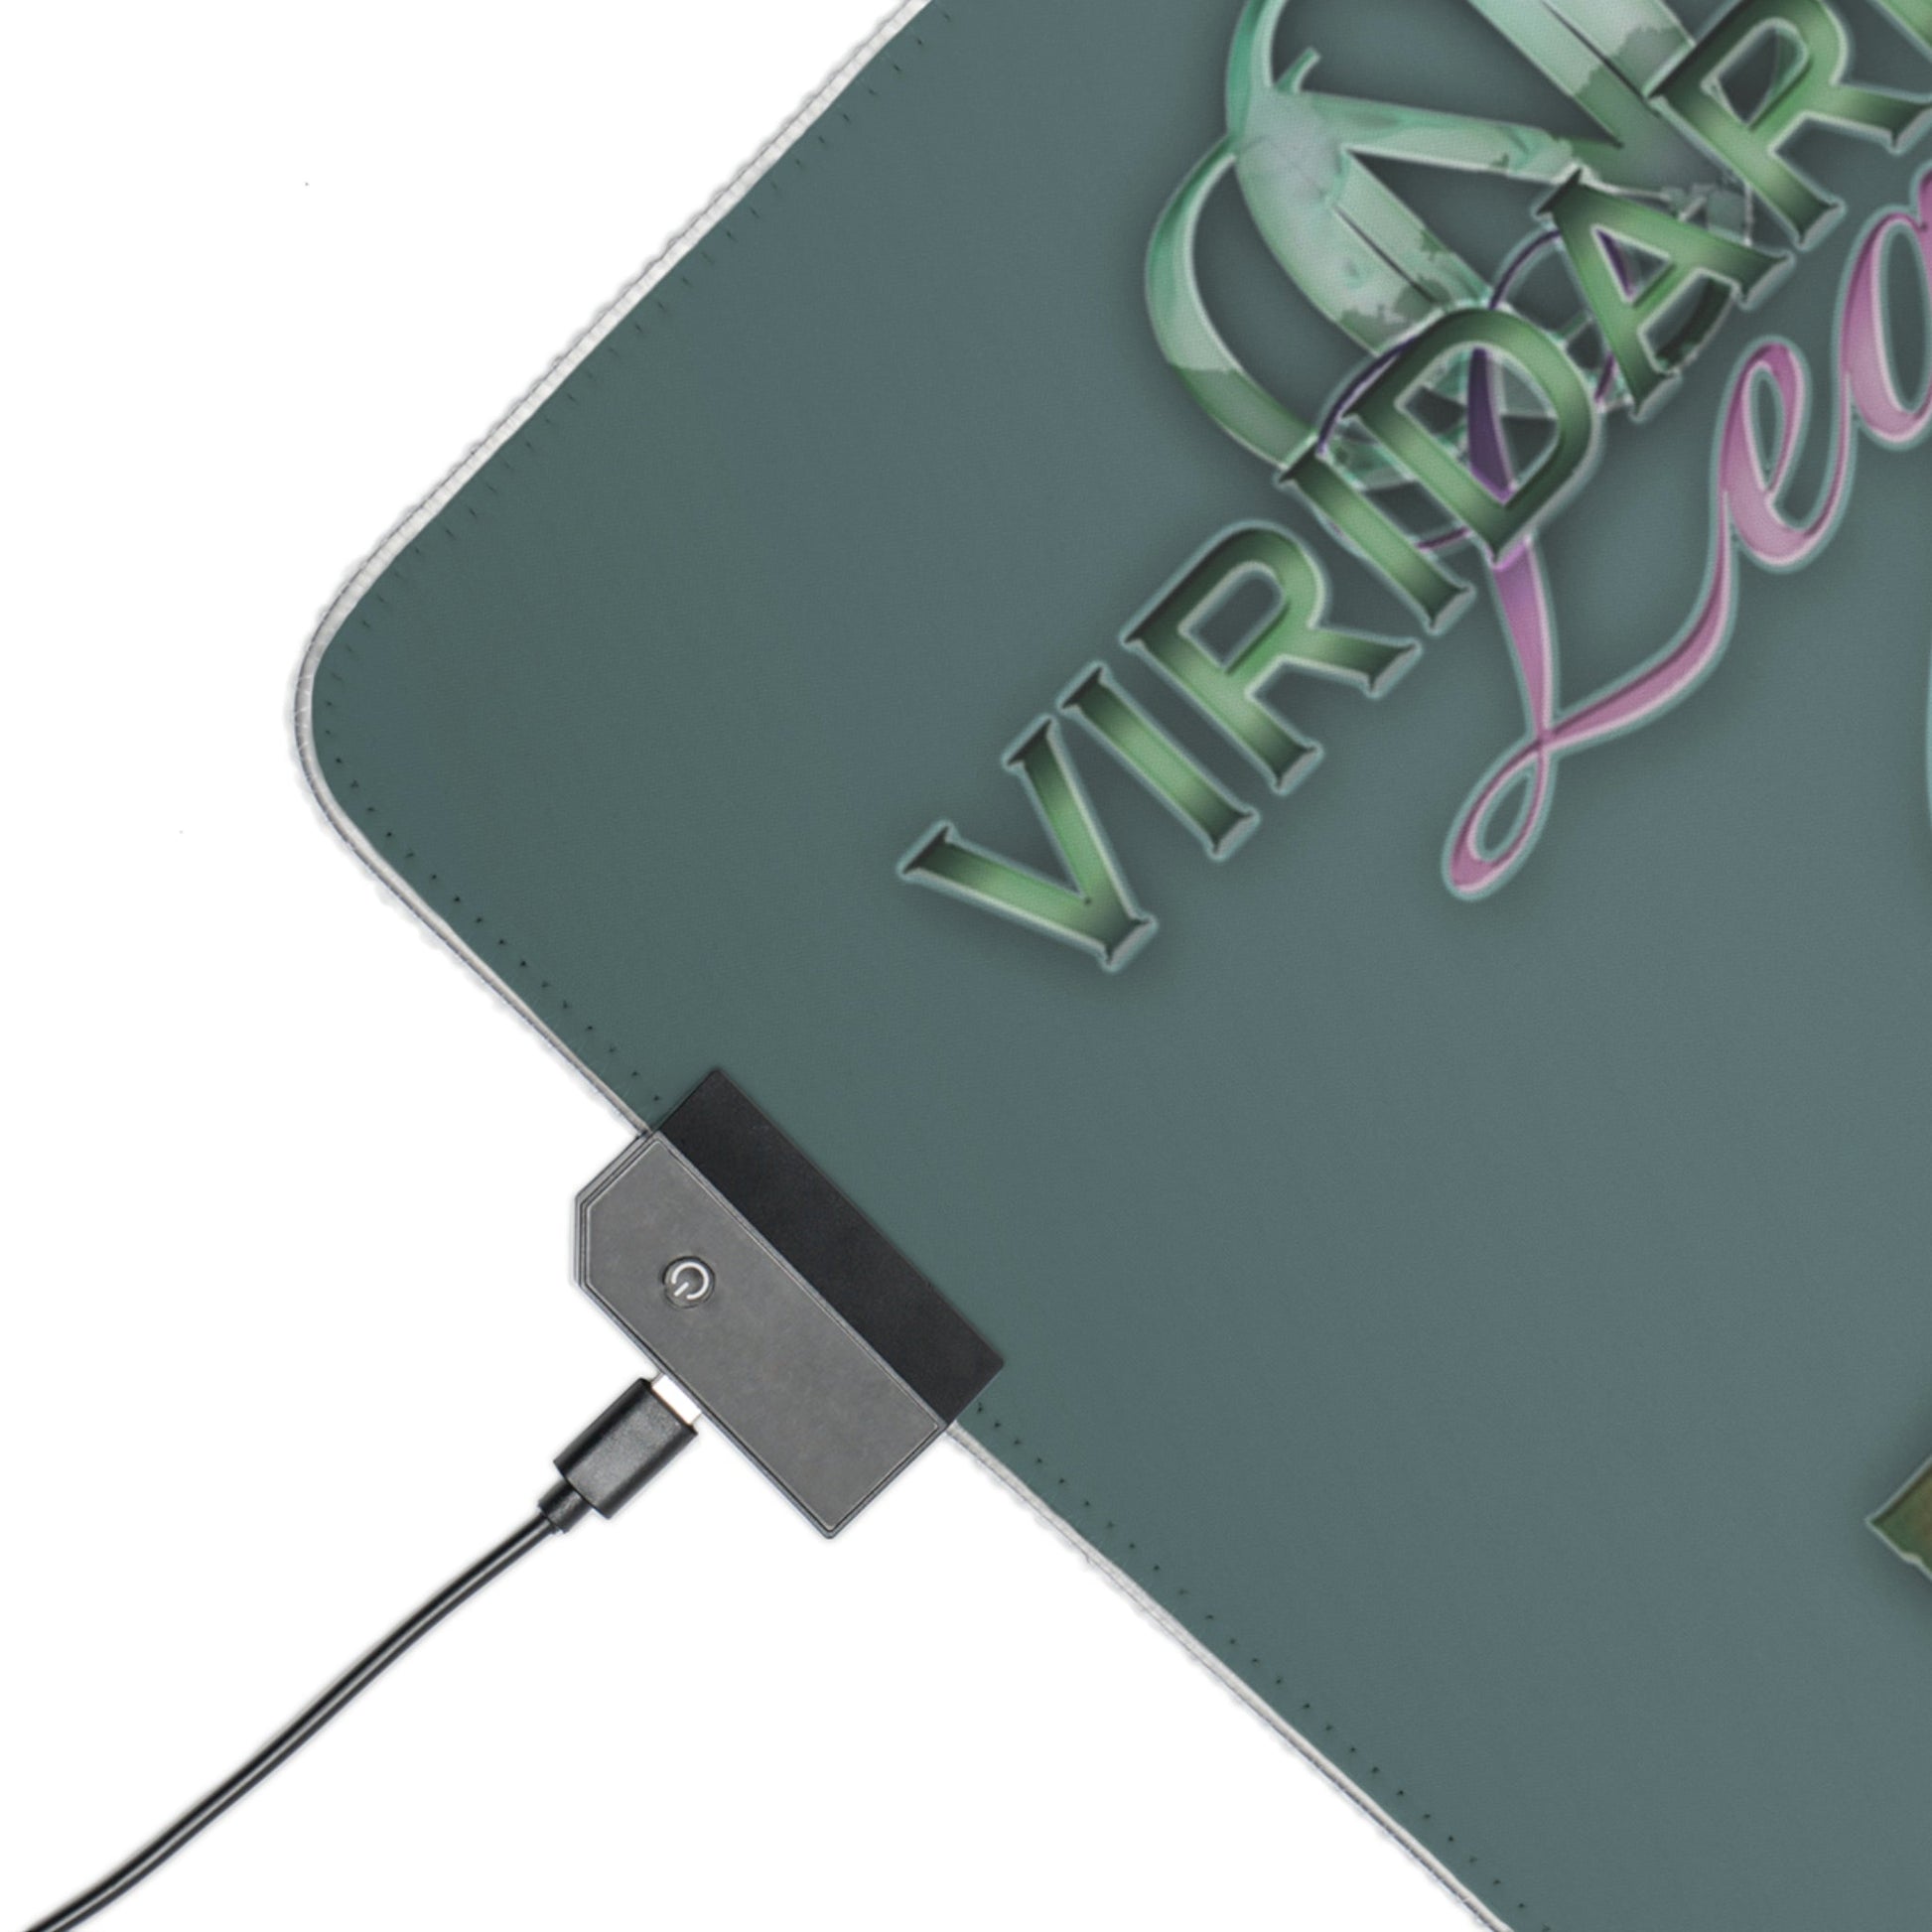 3 Viridarium Legends Eiloine LED Gaming Mouse Pad with 14